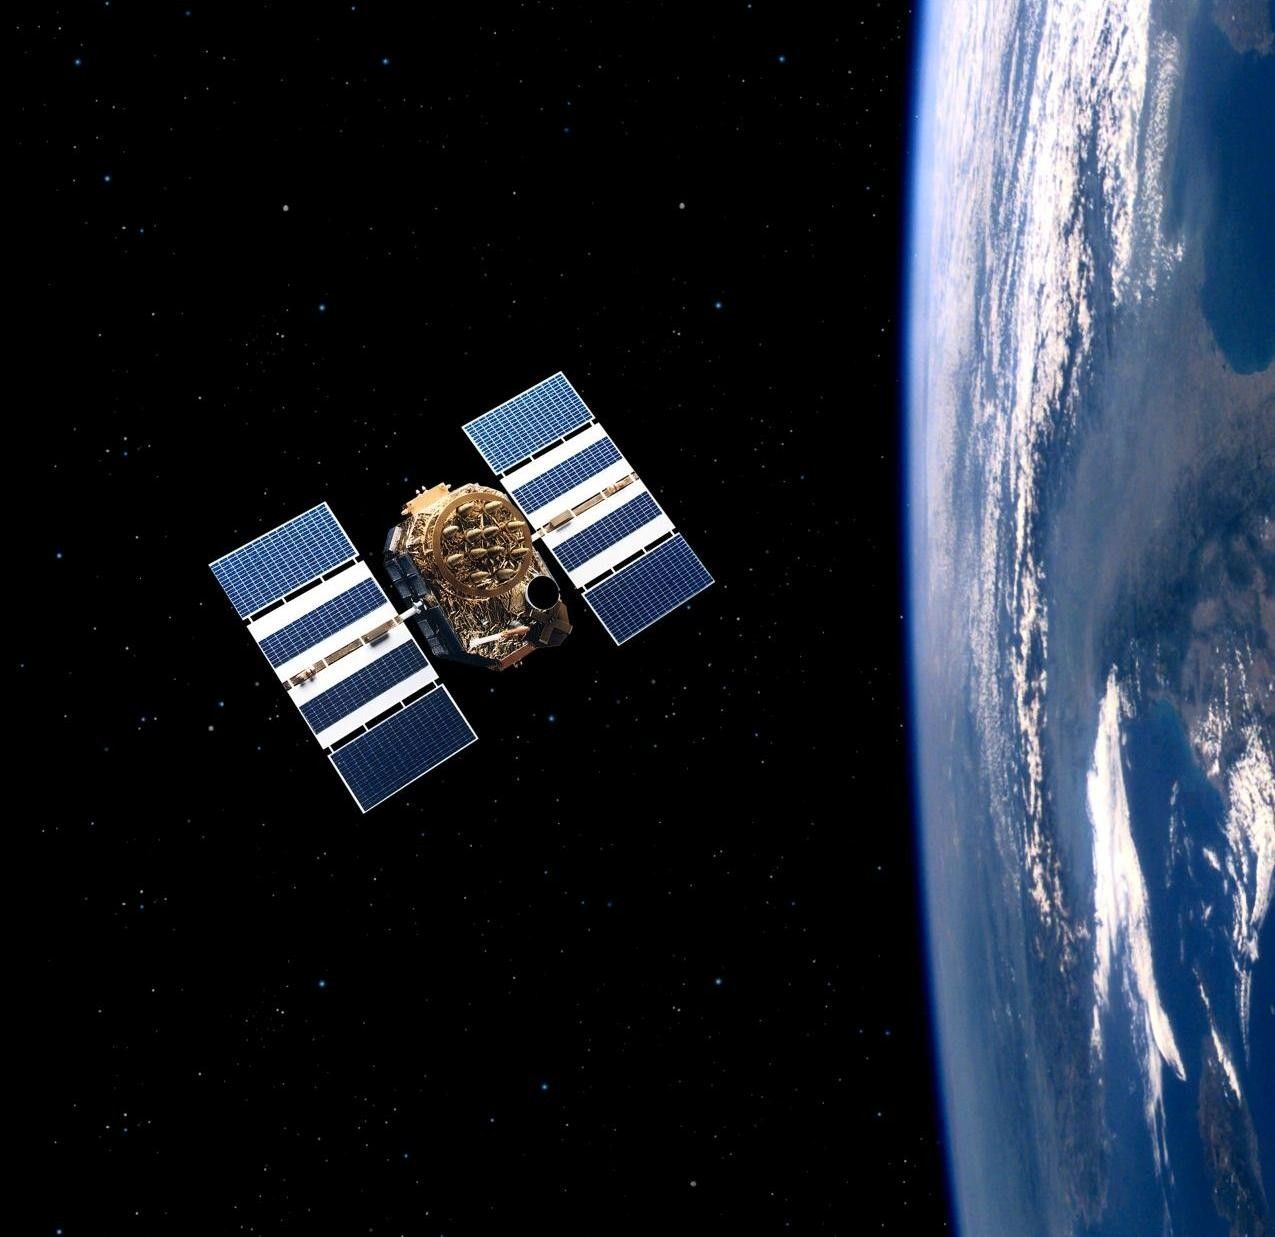 Artystyczna wizja satelity z GPS Block IIA. Źródło ilustracji: schriever.af.mil